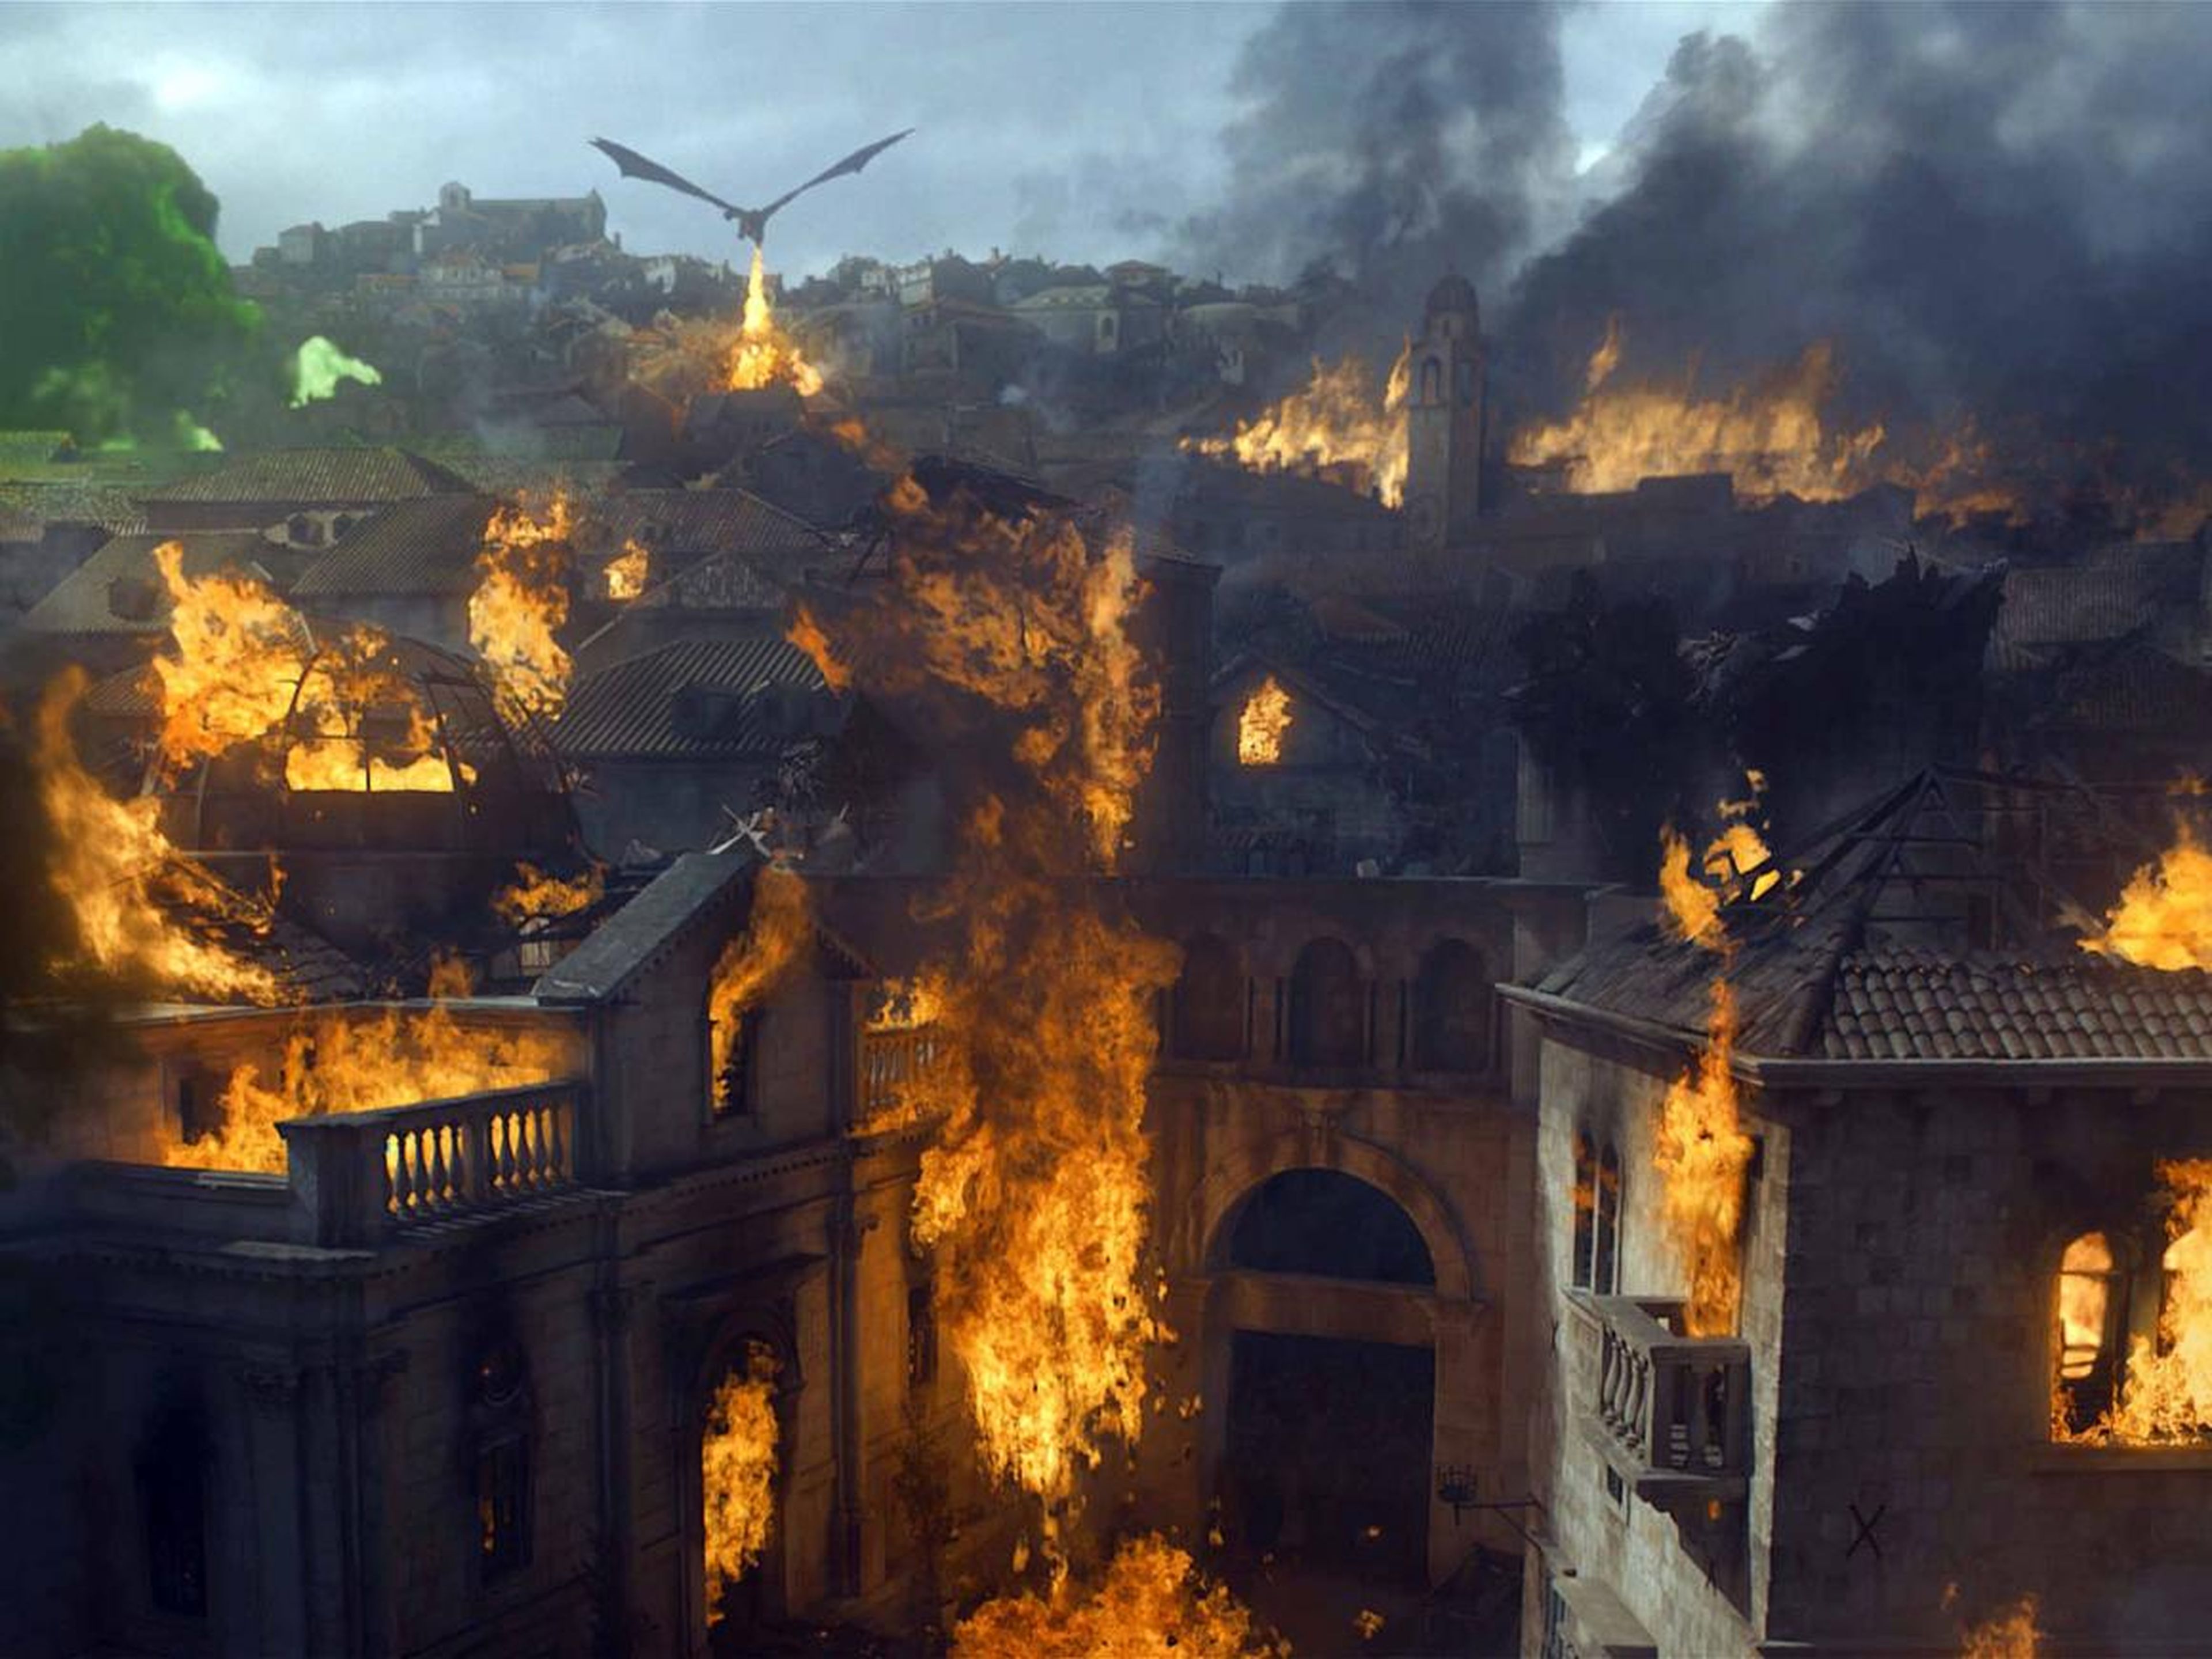 Desembarco del Rey en la serie de HBO "Juego de tronos".